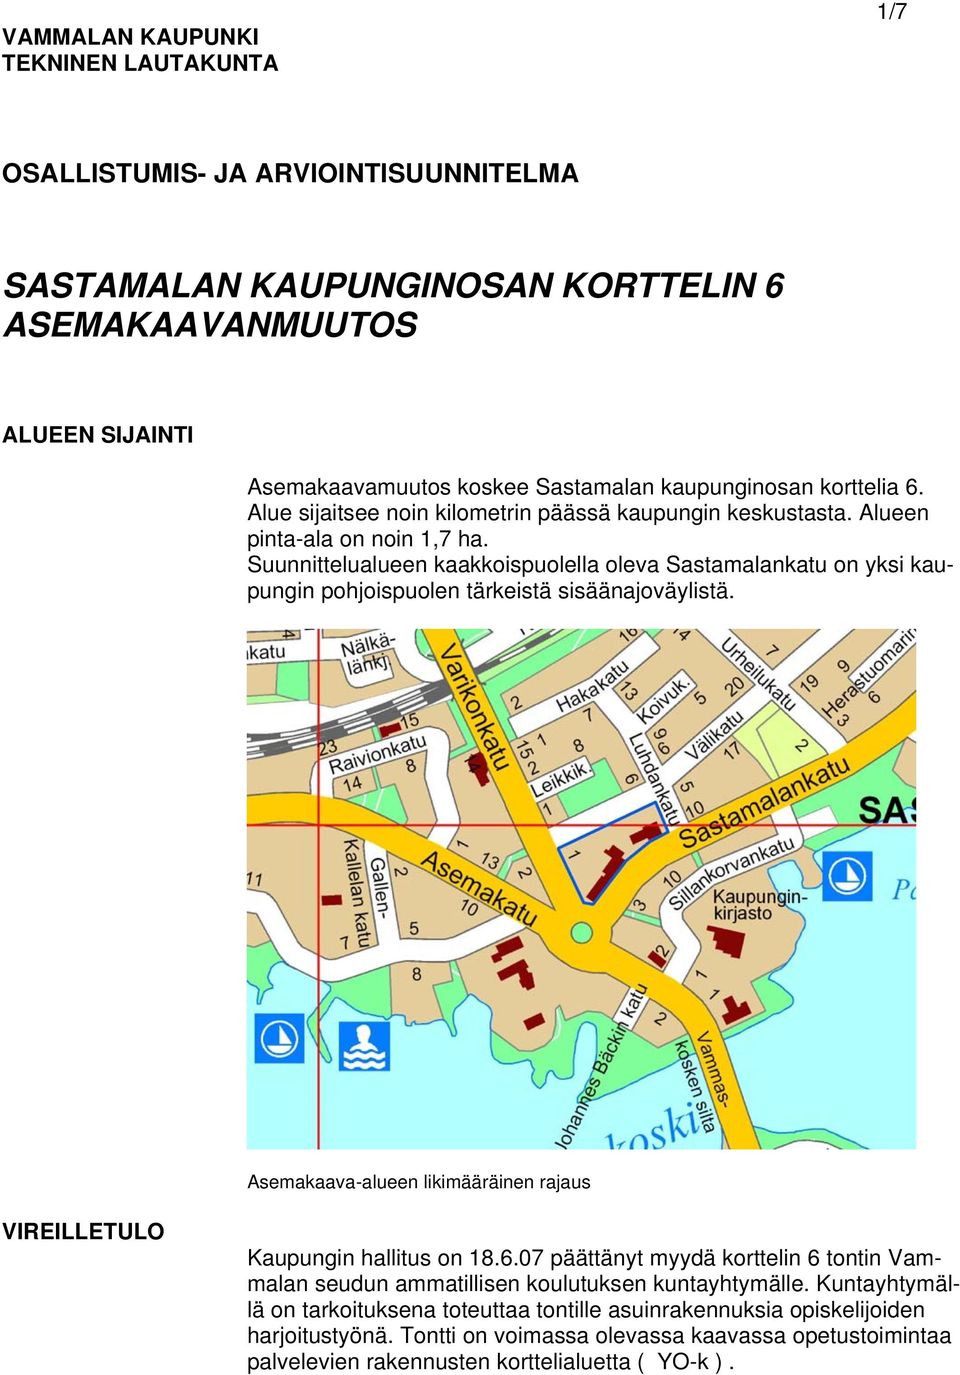 Suunnittelualueen kaakkoispuolella oleva Sastamalankatu on yksi kaupungin pohjoispuolen tärkeistä sisäänajoväylistä. Asemakaava-alueen likimääräinen rajaus VIREILLETULO Kaupungin hallitus on 18.6.